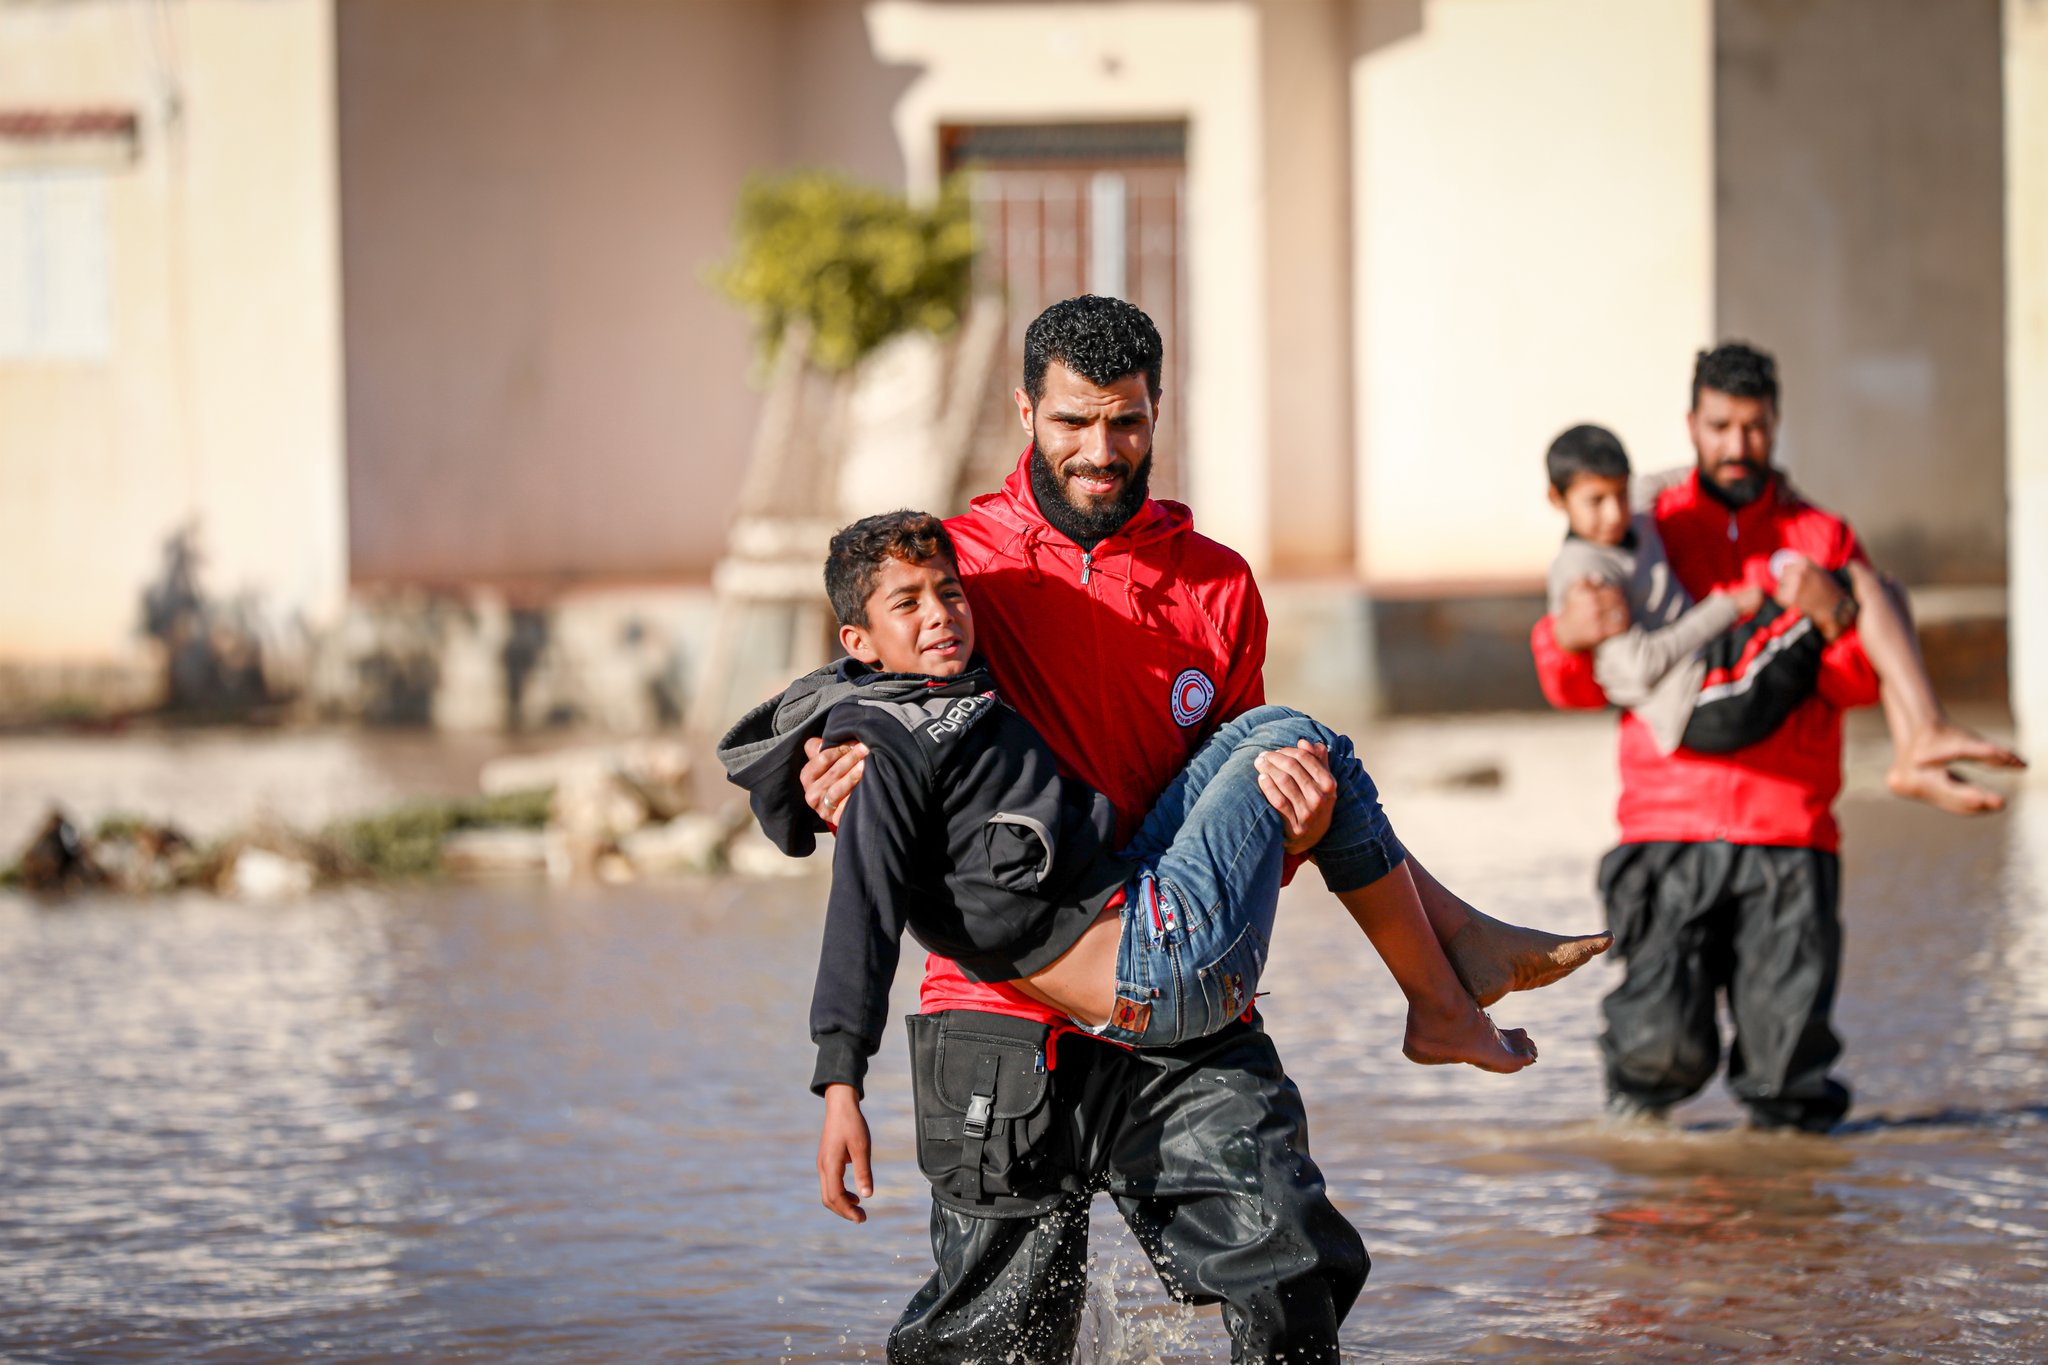 الهلال الأحمر الليبي يعلن إنقاذ 800 شخص وسط آمال بإيجاد احياء آخرين